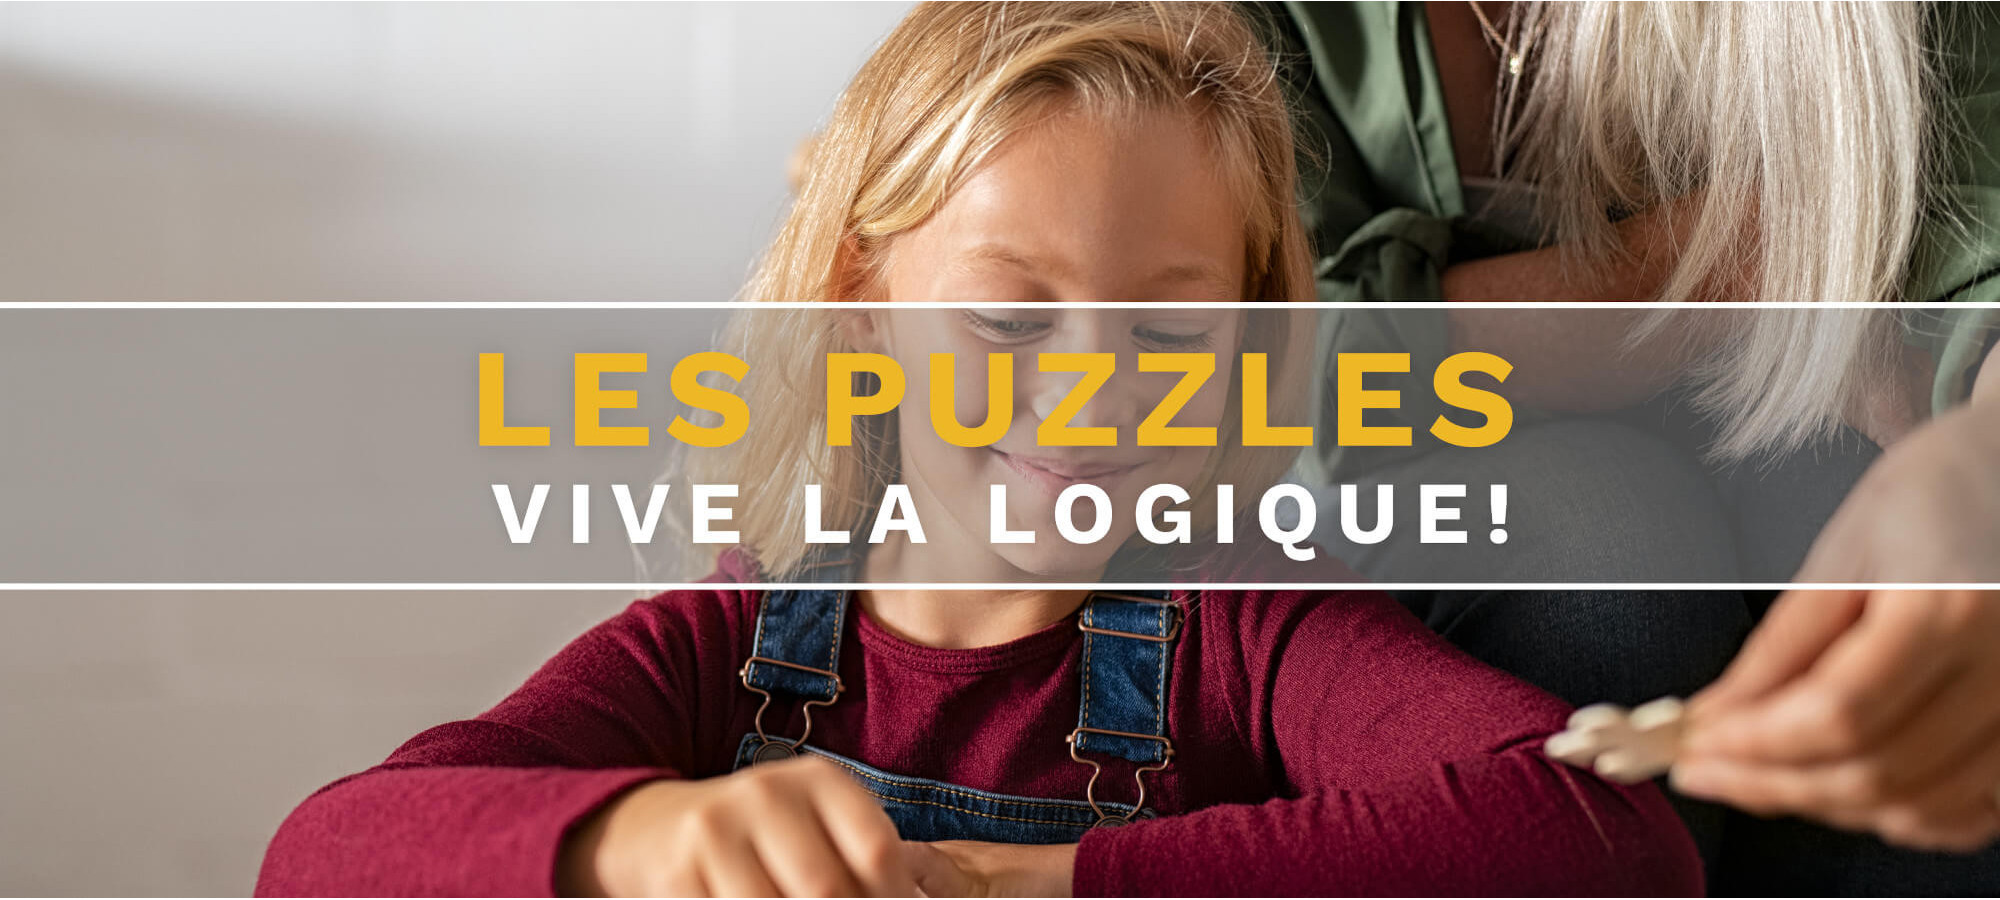 Puzzle bois & carton  - Site FR - Livraison rapide - Top QUALITÉ